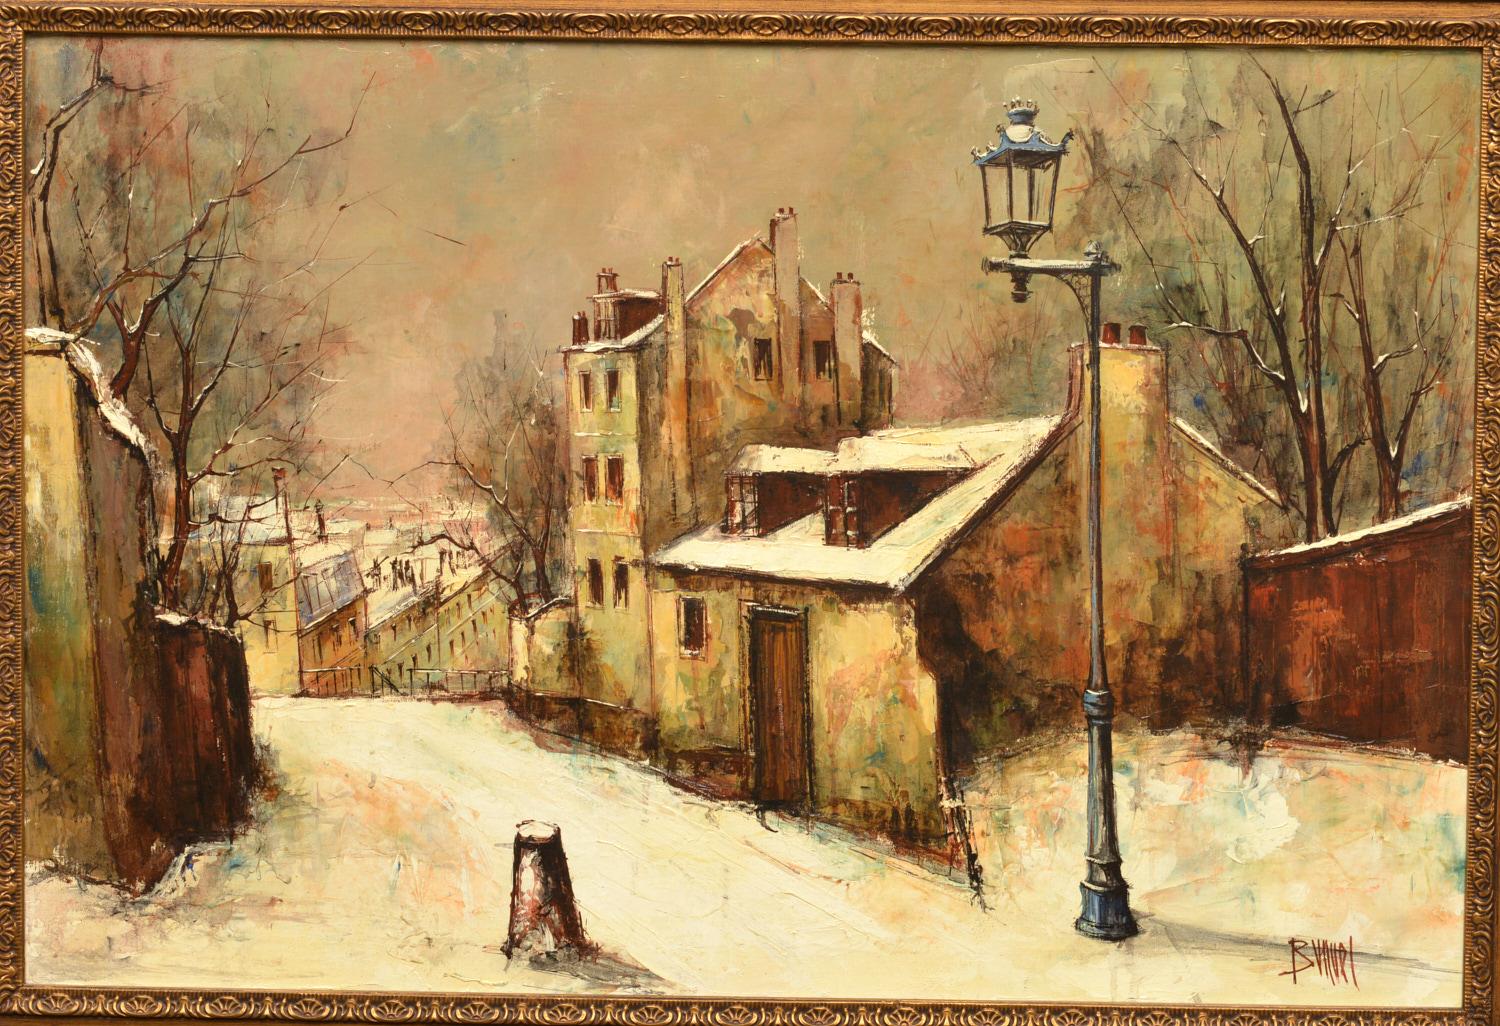 Manuel Monton Bunuel (espagnol, né en 1940), une scène de rue hivernale, huile sur toile, signée Bunuel en bas à droite, Une peinture à l'huile contemporaine expressive, l'artiste a appliqué la peinture par touches rapides à l'aide d'un couteau à